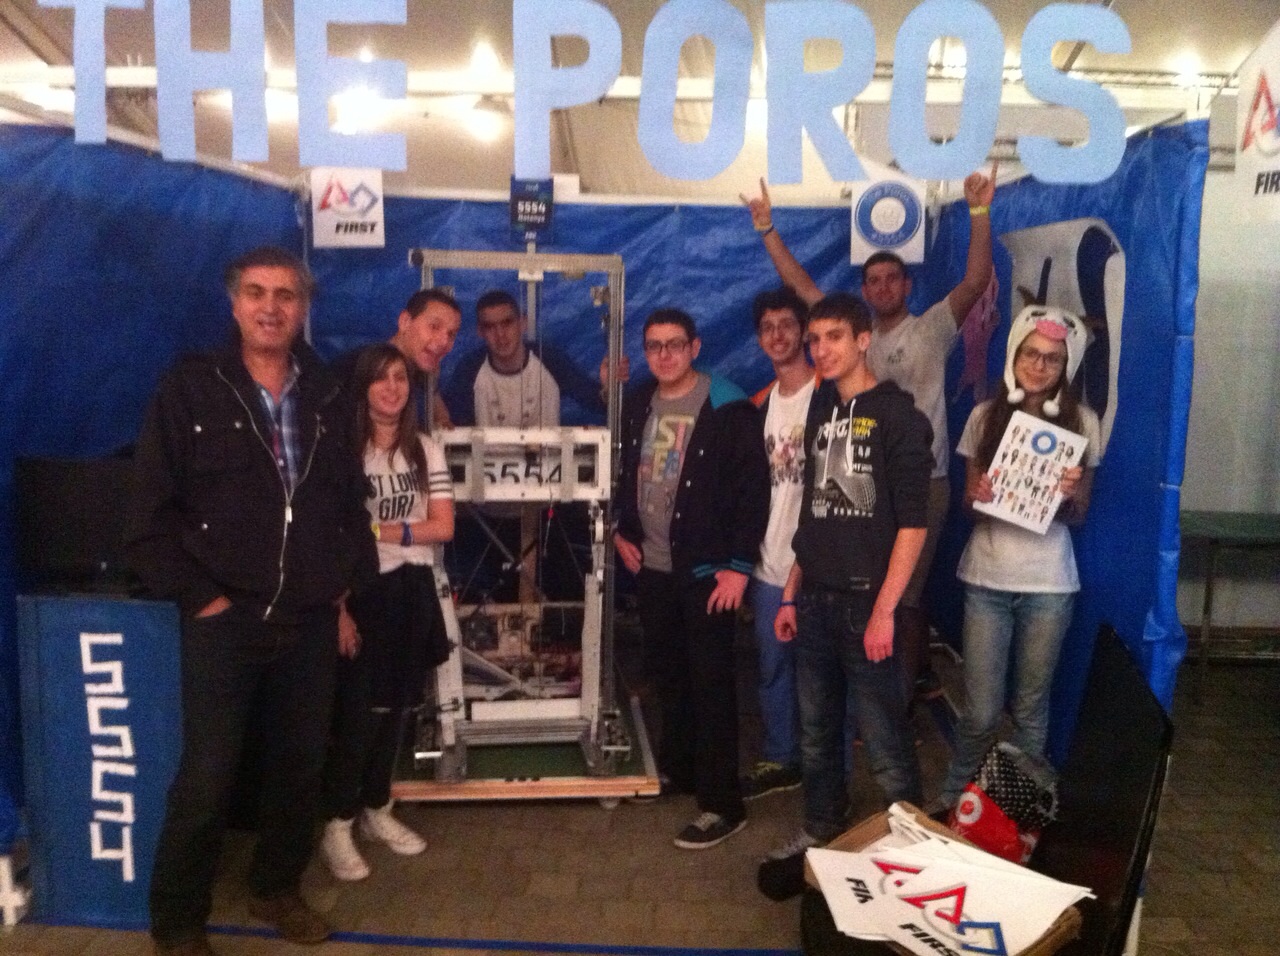  תלמידי אורט ליבוביץ' זכו בתחרות רובוטיקה הארצית